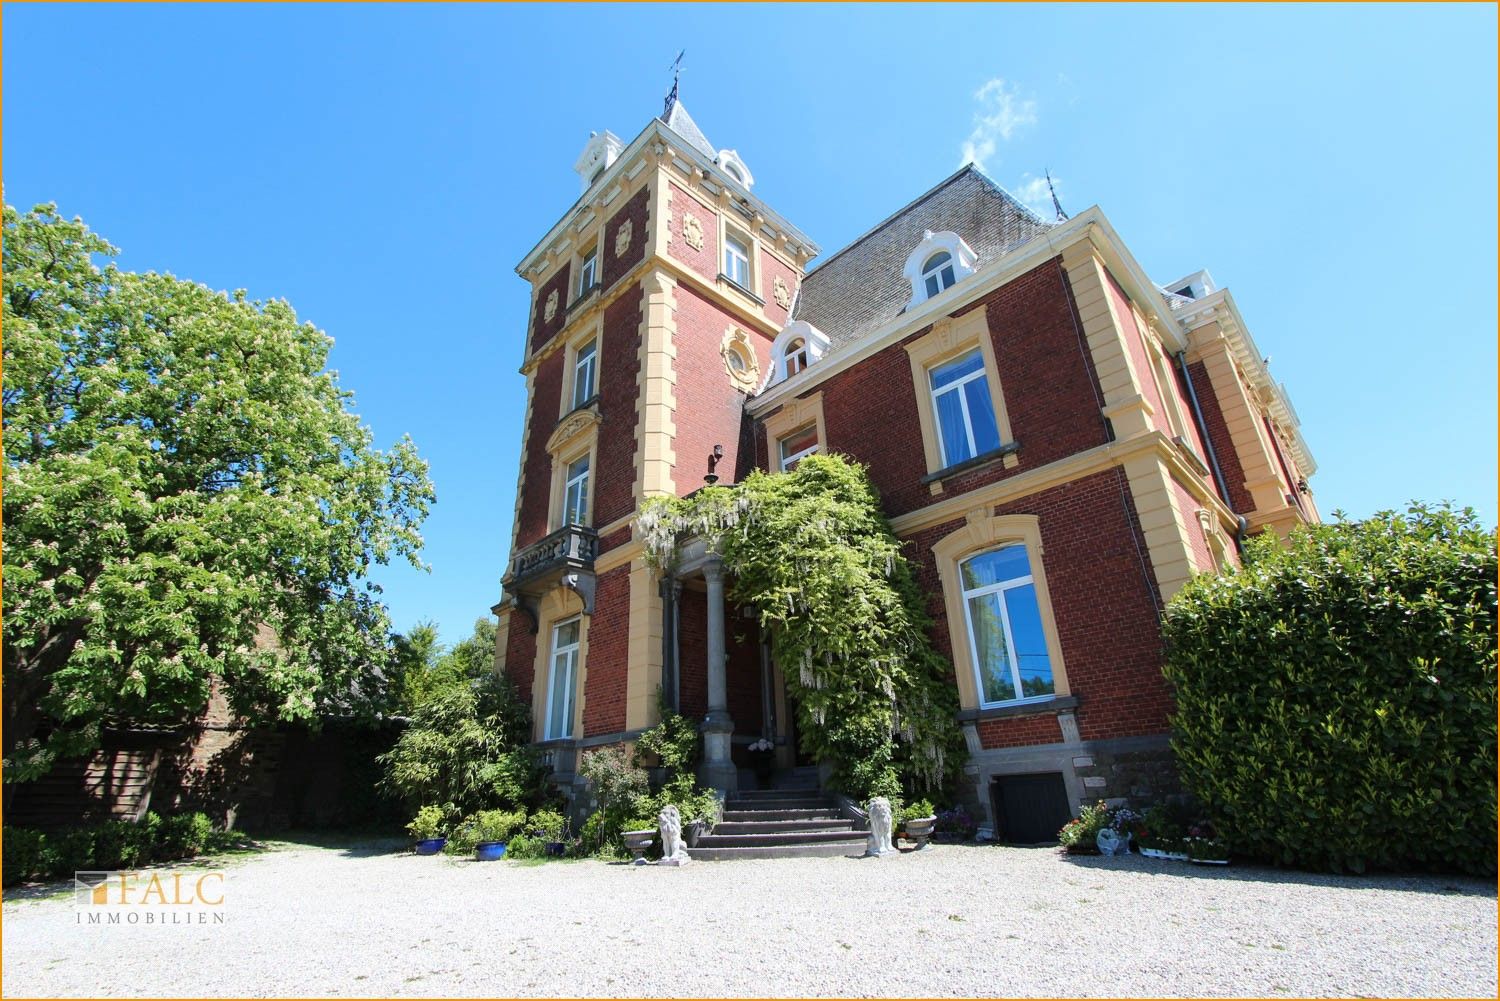 Images Chateau Neufais te koop in België